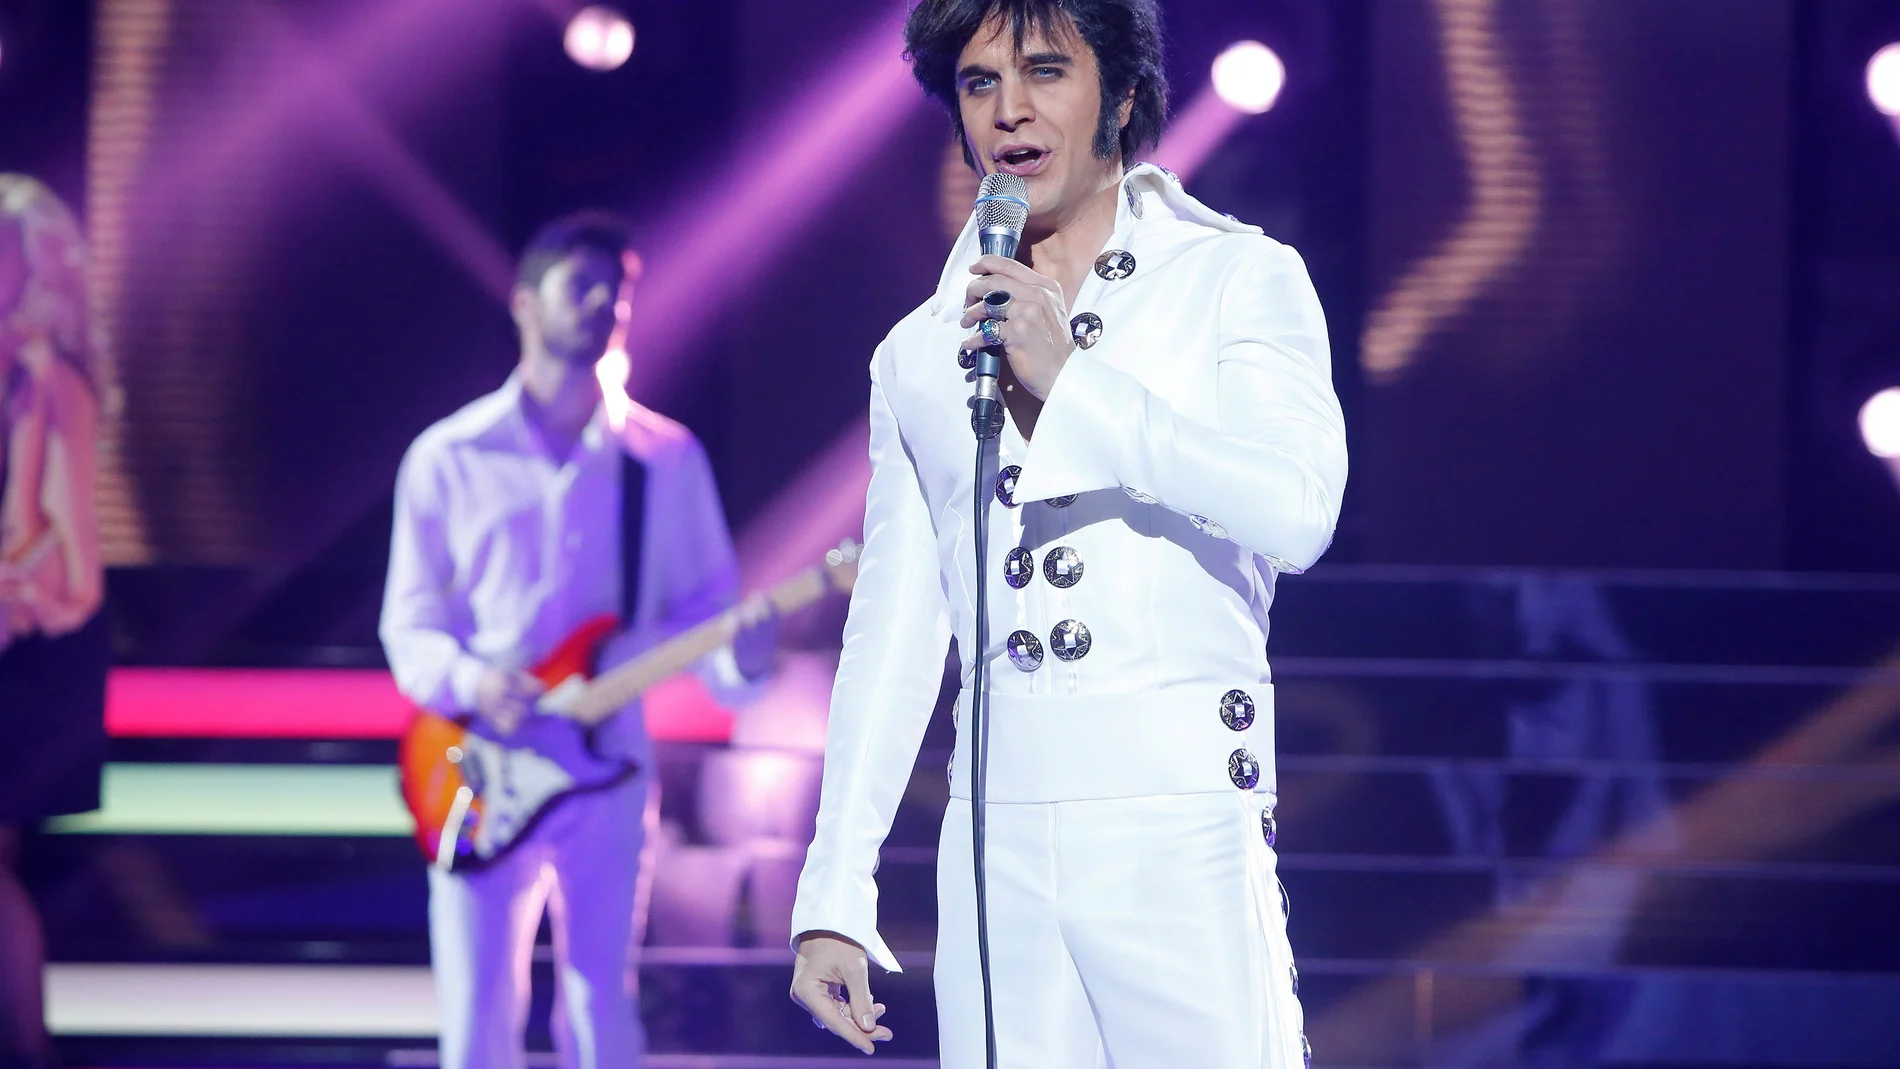 Adrián Rodríguez mueve las caderas y pone en pie al público interpretando el tema ‘Suspicious minds’ del rey del rock Elvis Presley